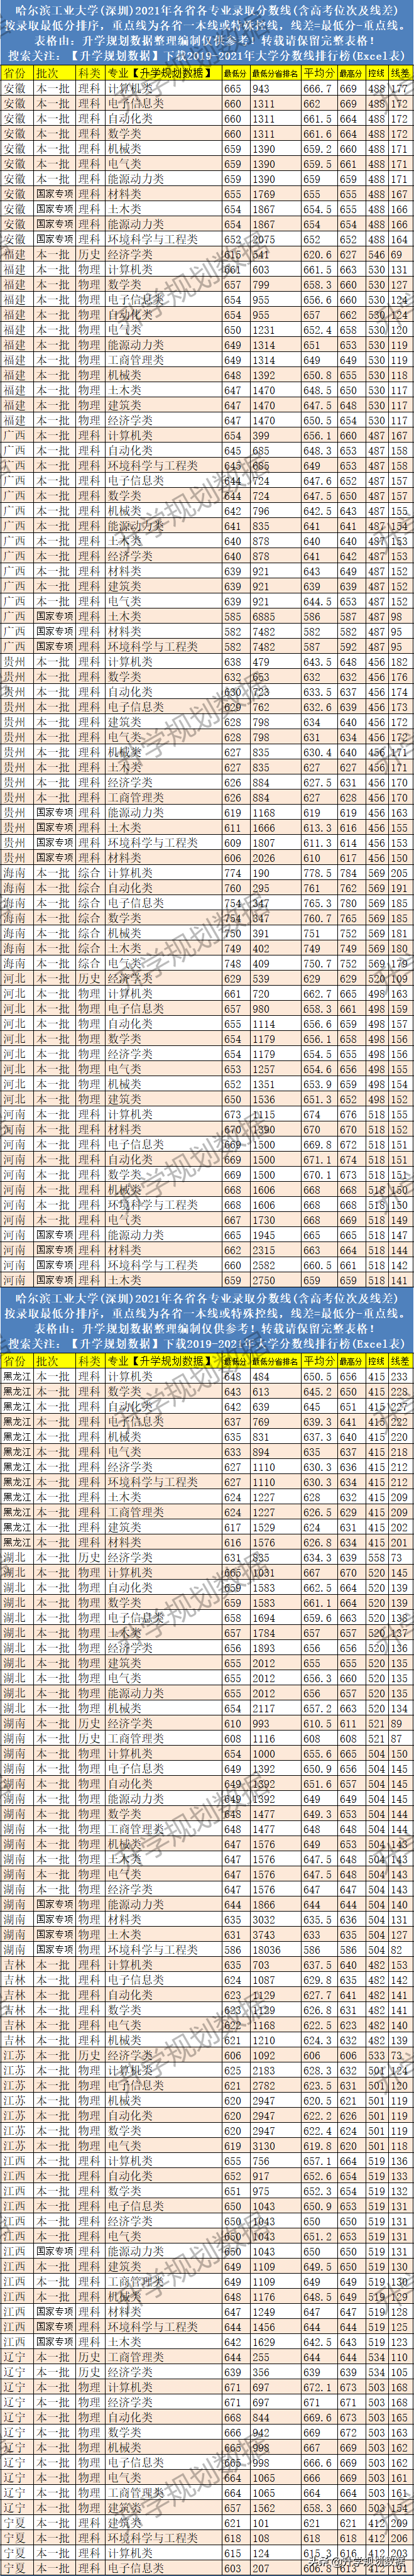 2021哈尔滨工业大学(深圳)各专业分数线排名及位次